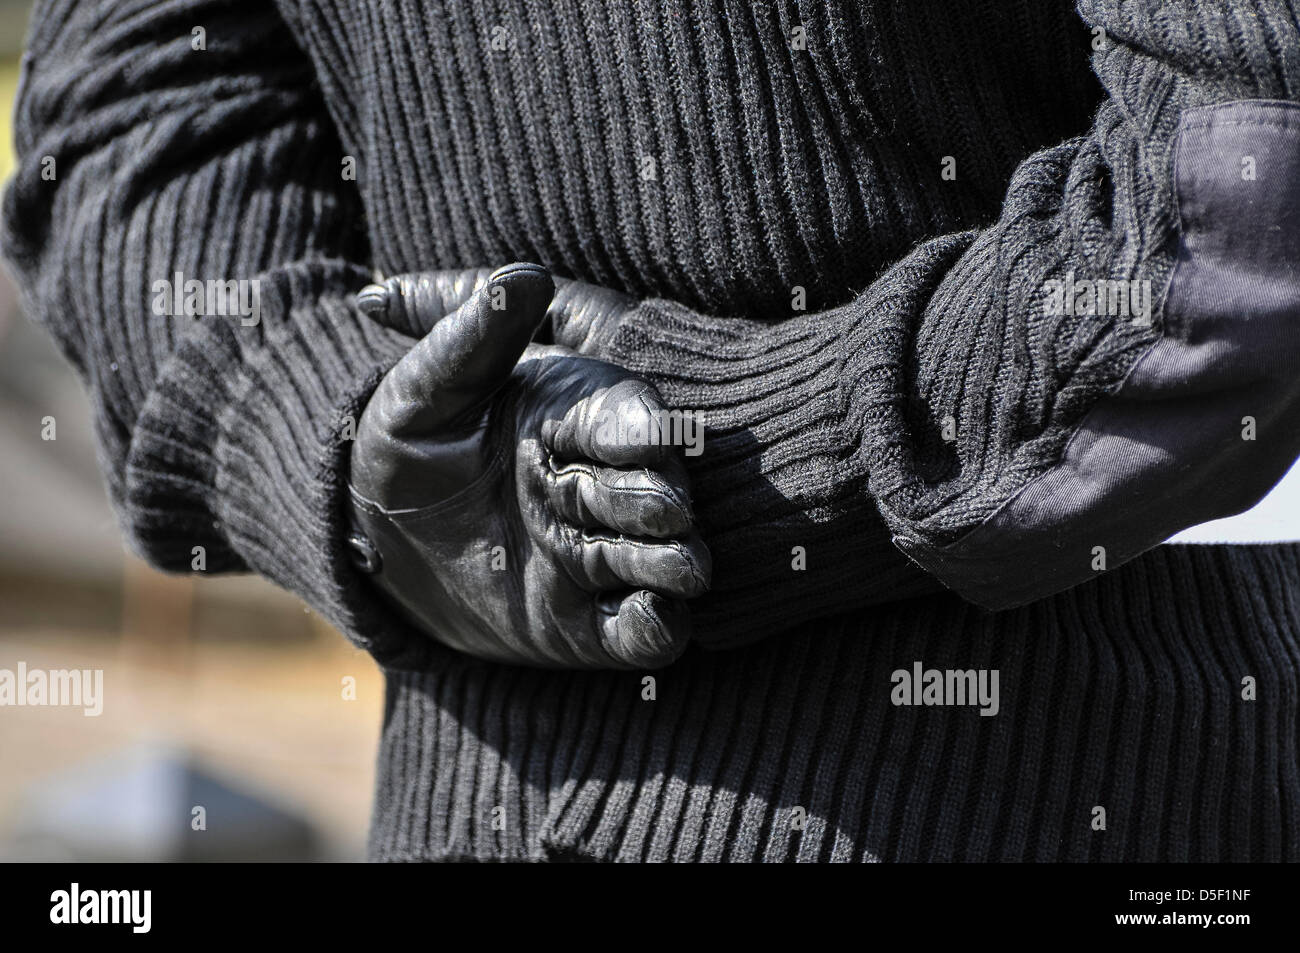 Un hombre vestido con uniforme paramilitar Republicano Irlandés mantiene sus manos enguantadas detrás de su espalda. Foto de stock